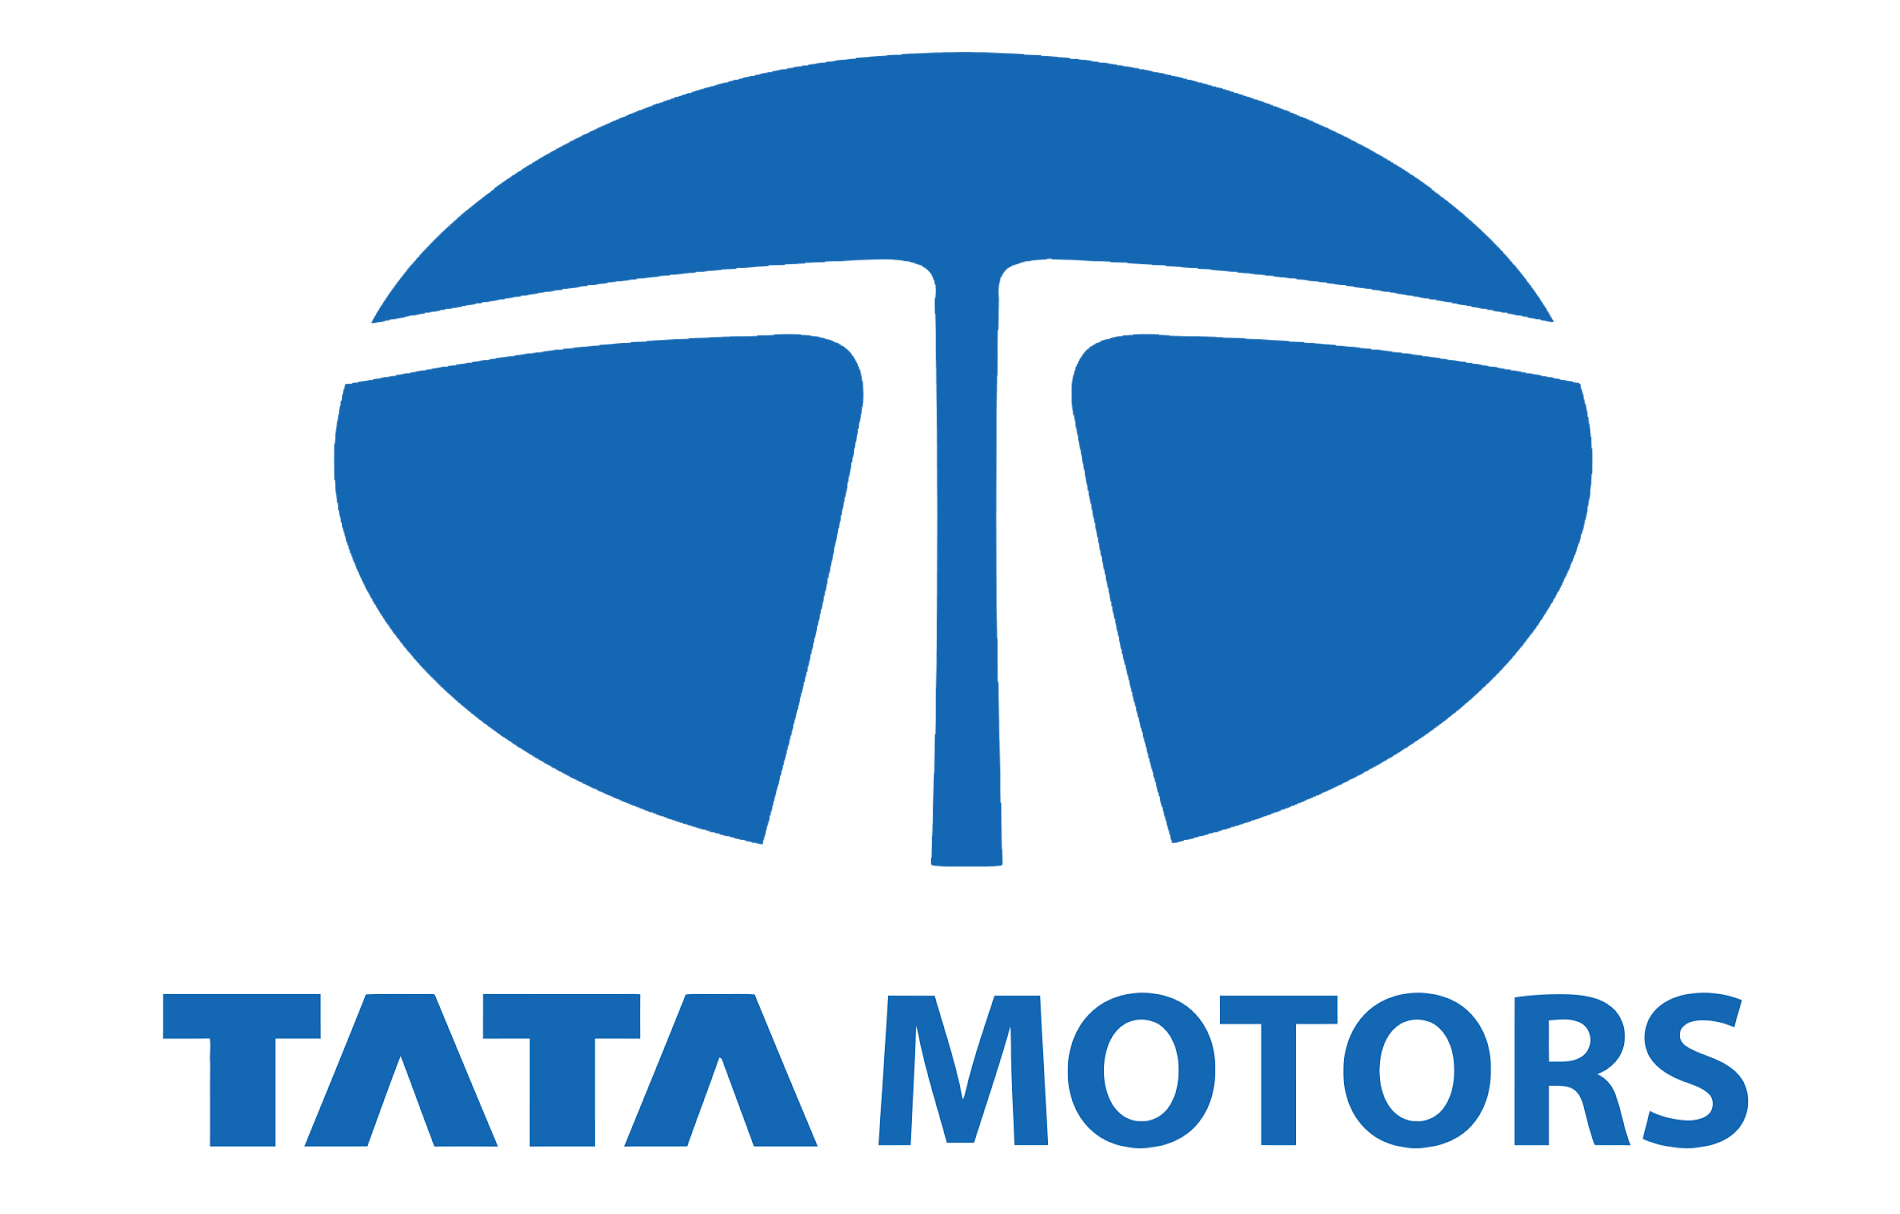 Tata Motors Cars Showroom - Sanya Motors|Show Room|Automotive